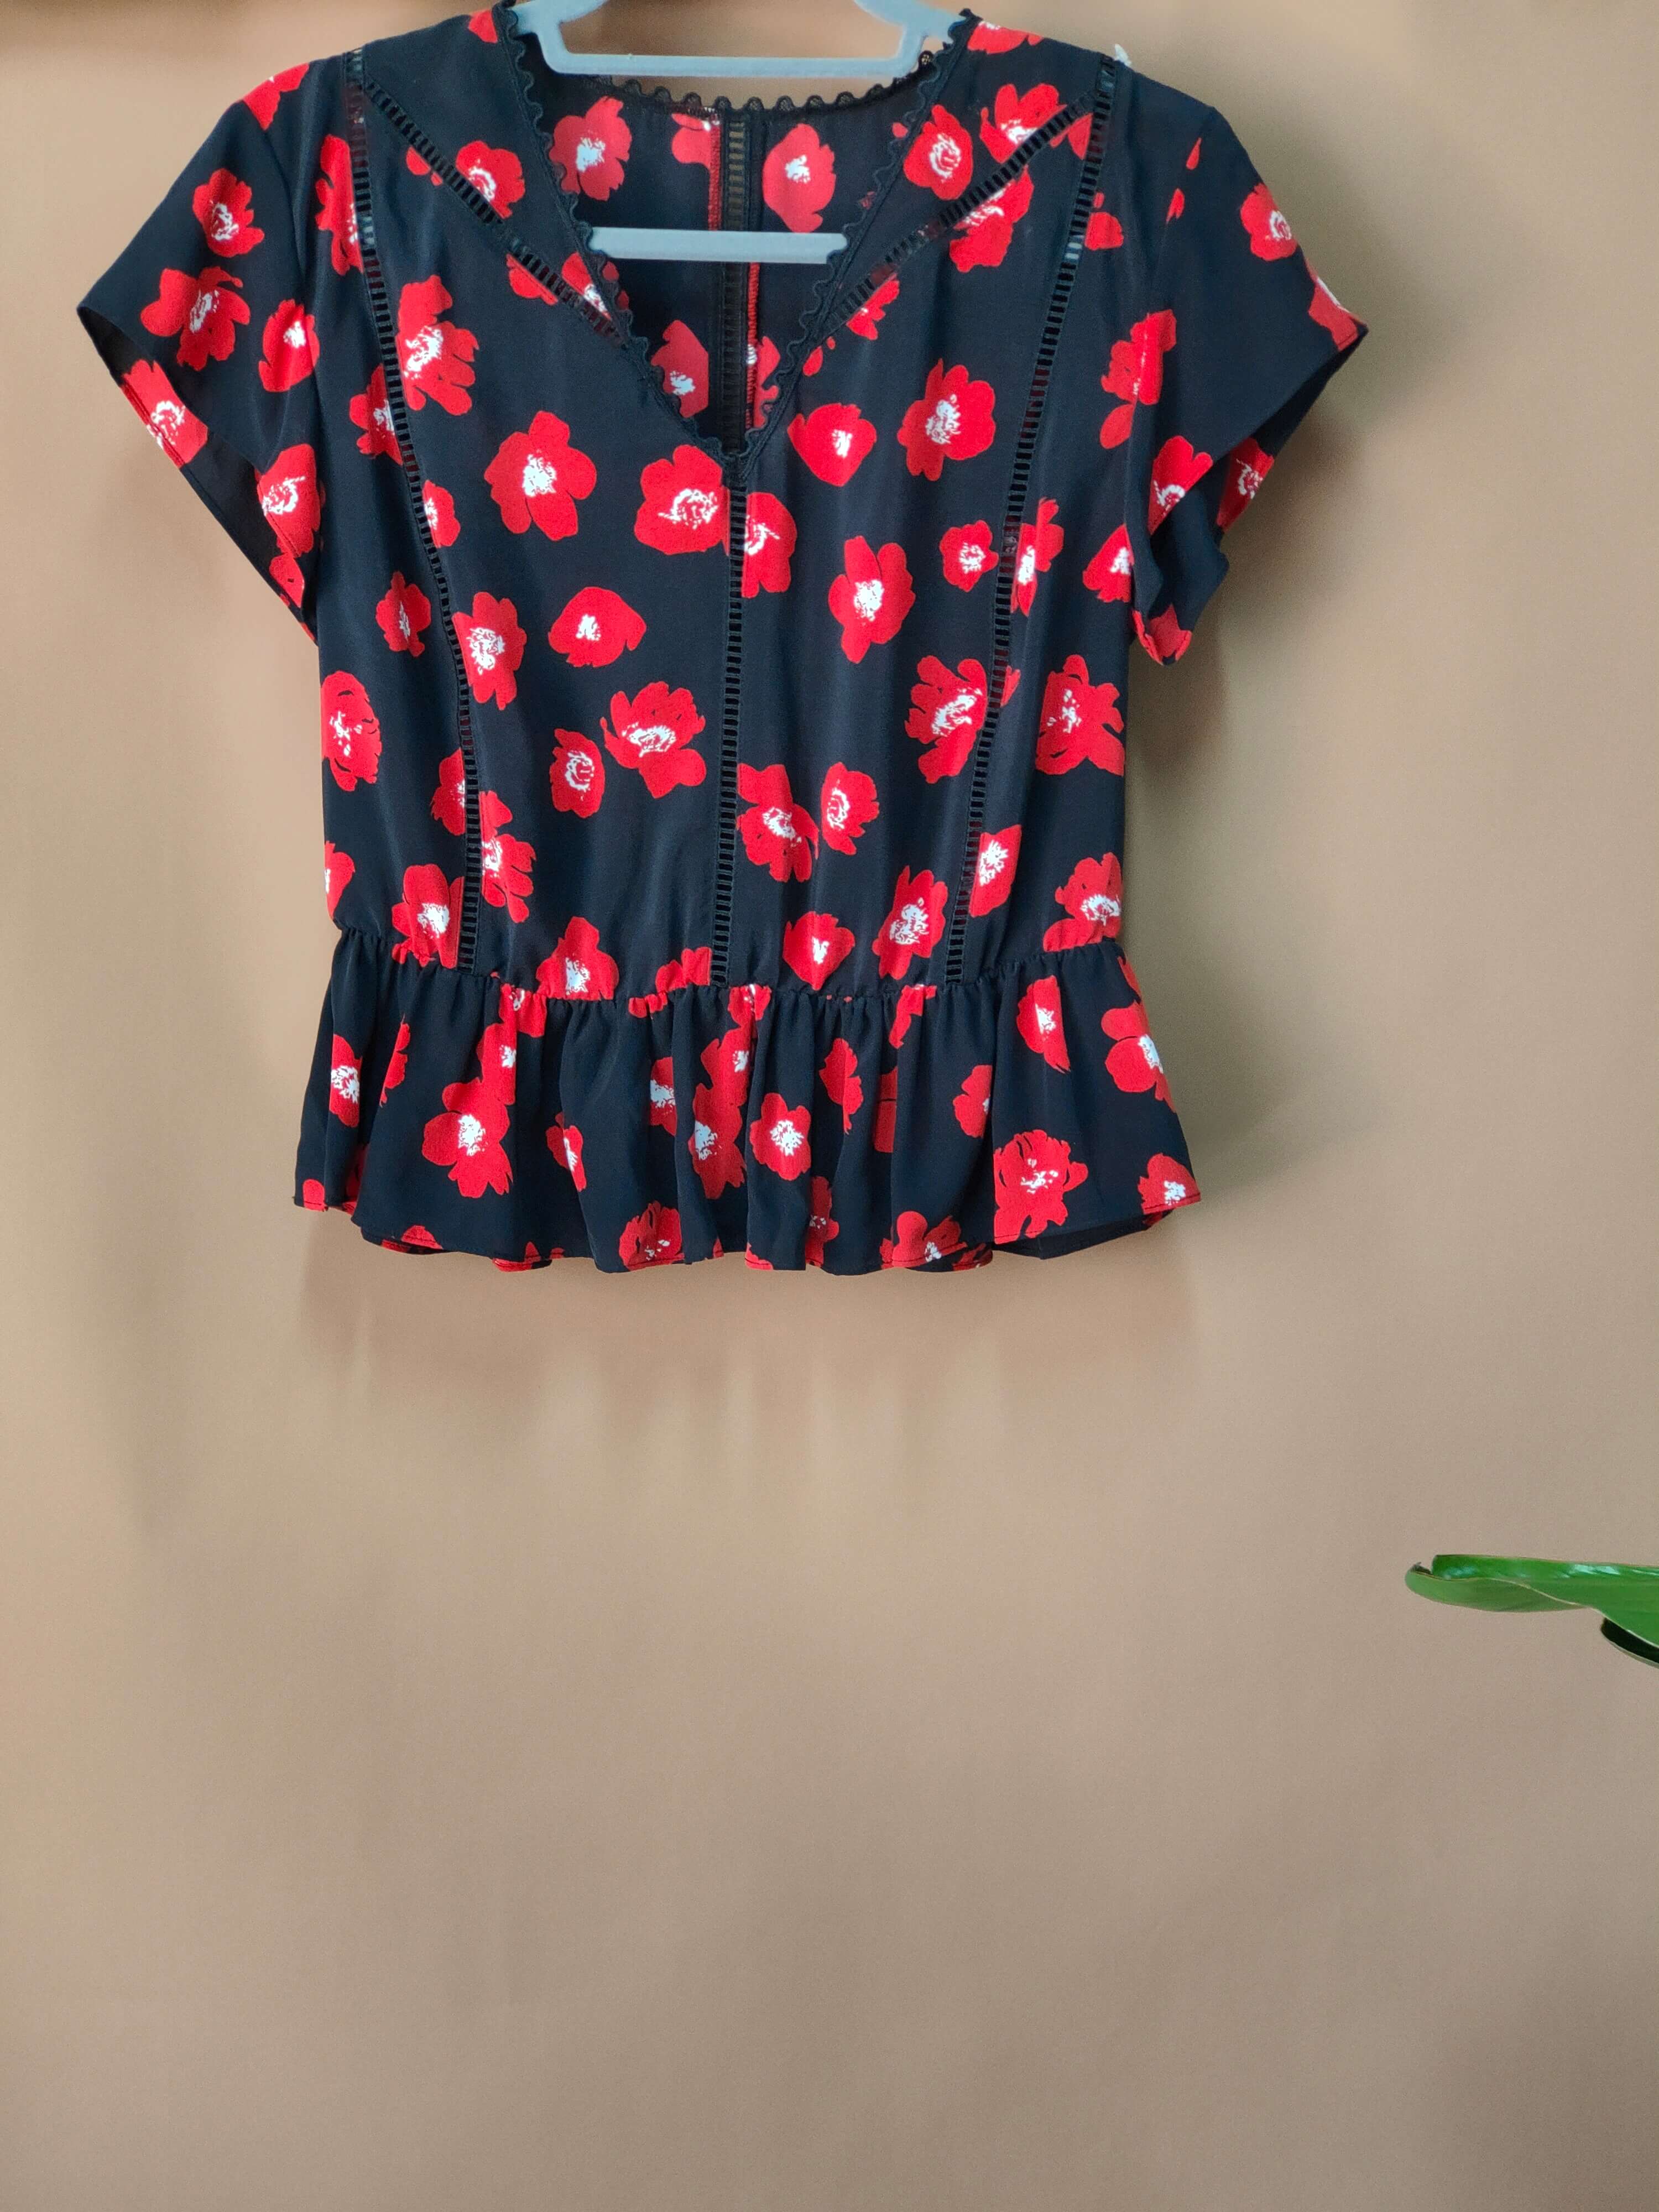 Blusa superior de camiseta de manga corta roja de calidad con estampado floral de etiqueta privada a granel